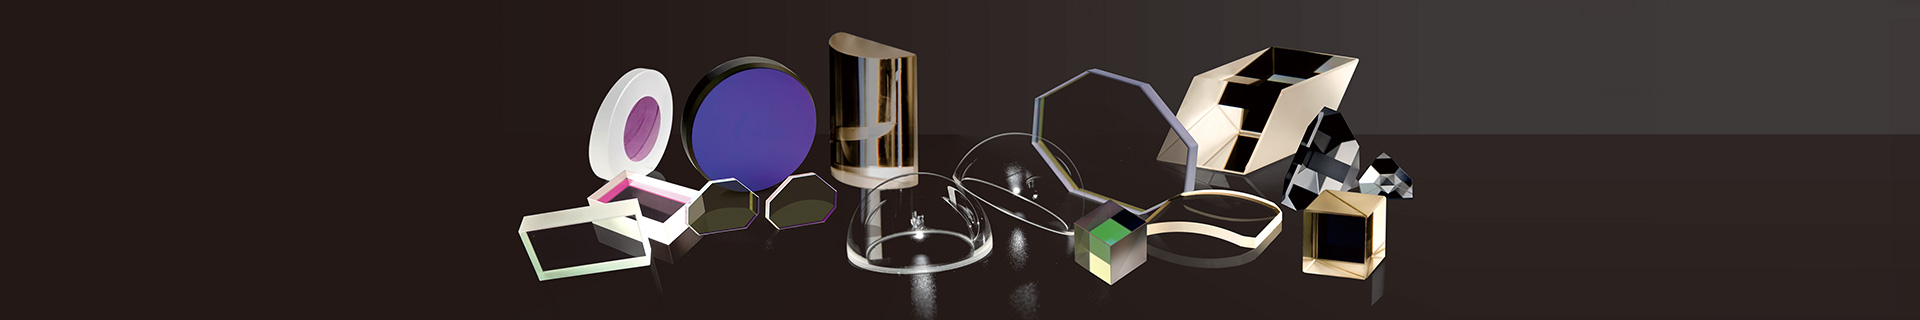 Componentes ópticos <br/> Fabricación y diseño